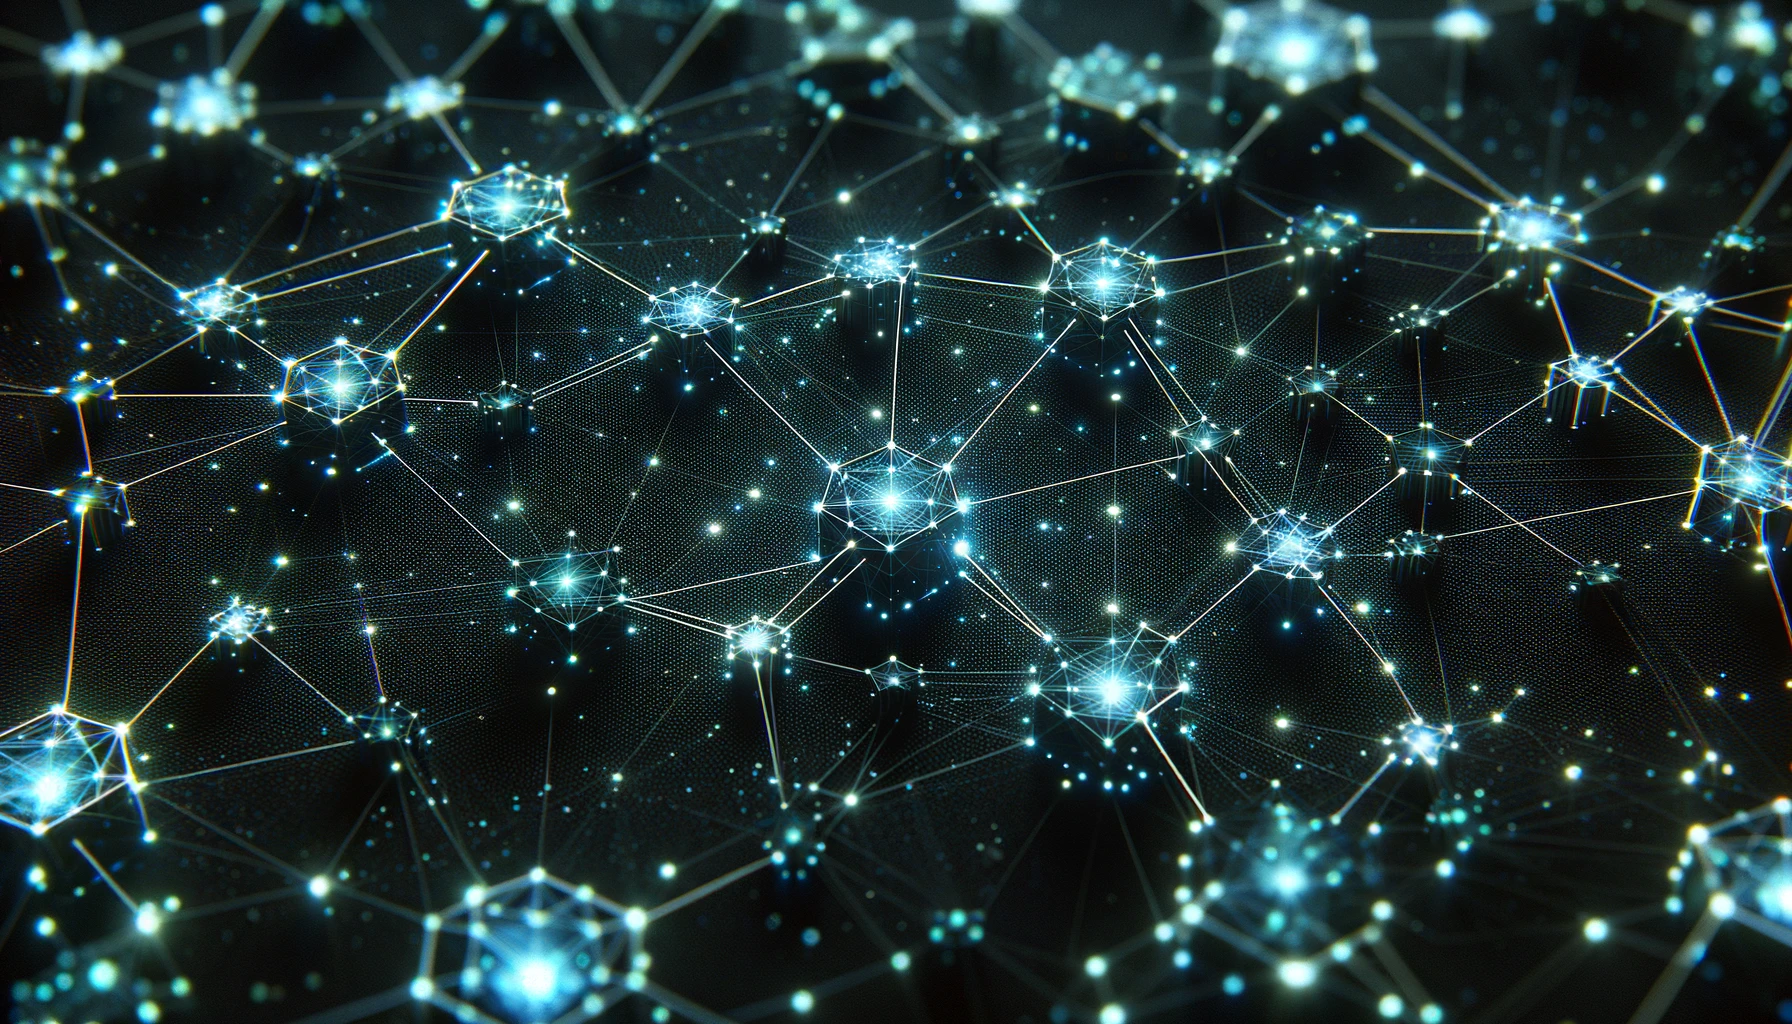 ブロックチェーン技術のデジタル表現、ネットワークを象徴する連結されたノードが特徴